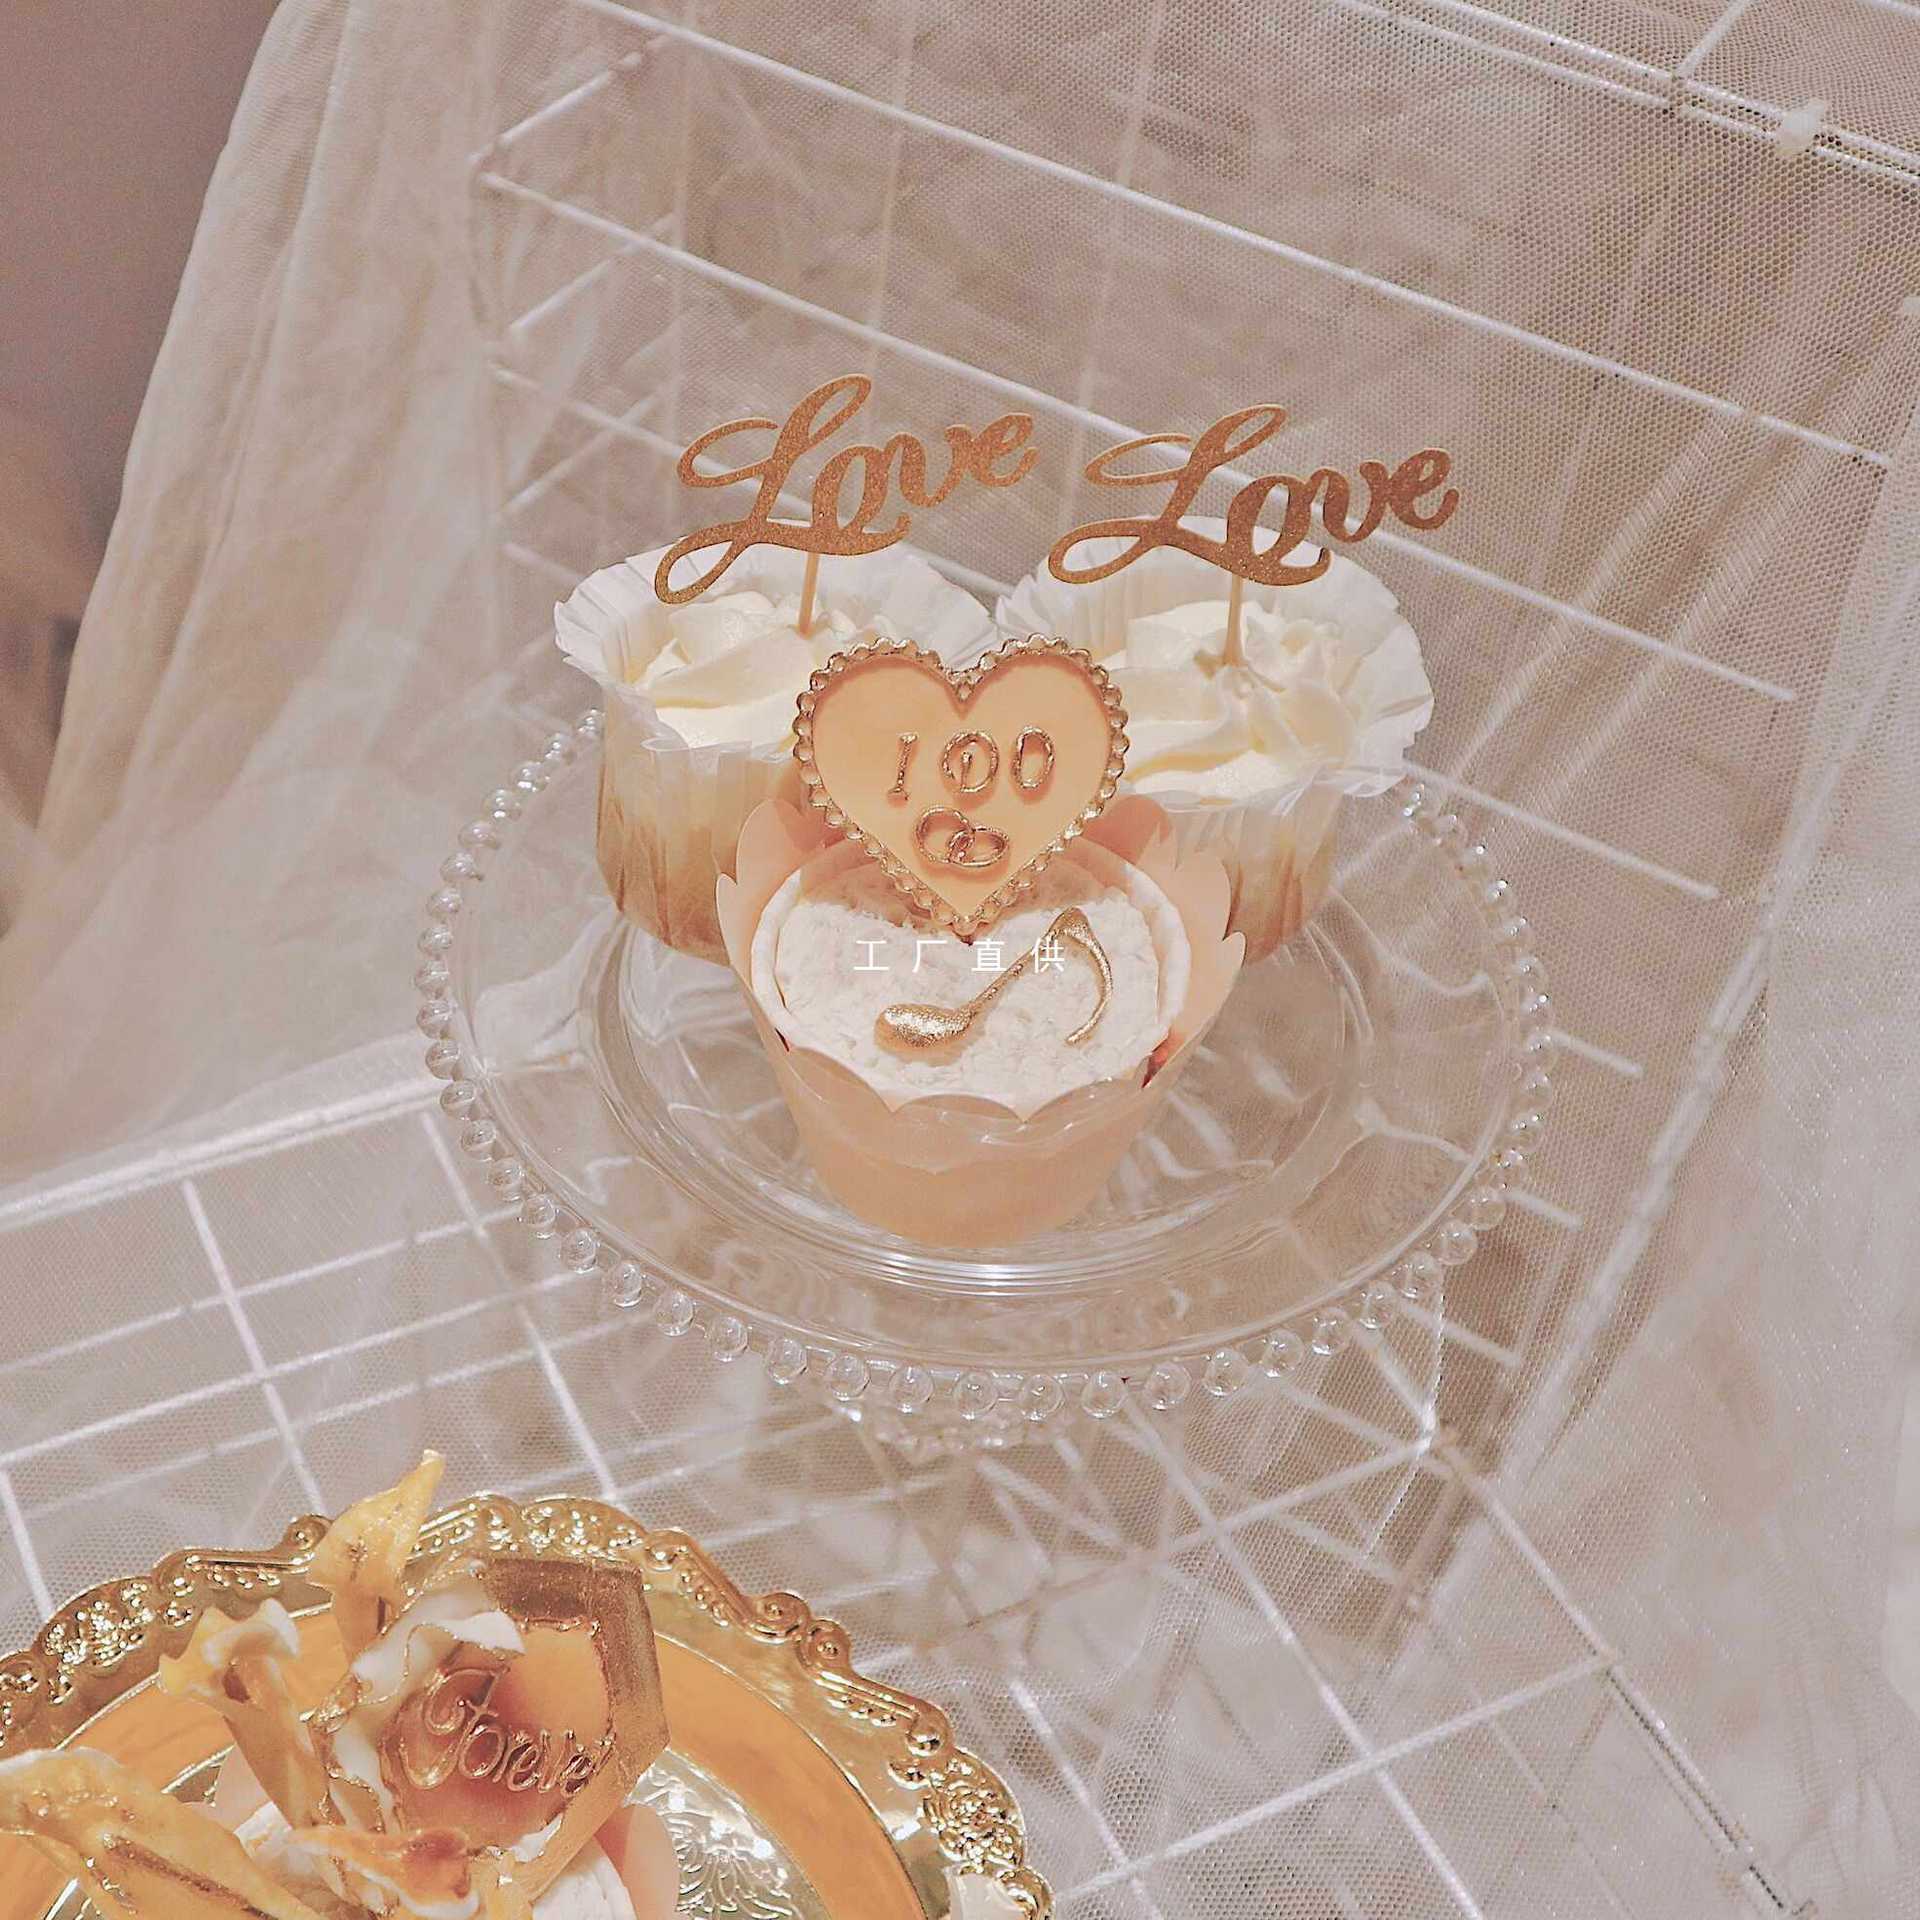 8NN7节日生日派对香槟色婚礼甜品台装饰金色插牌配件纸杯蛋糕搭配